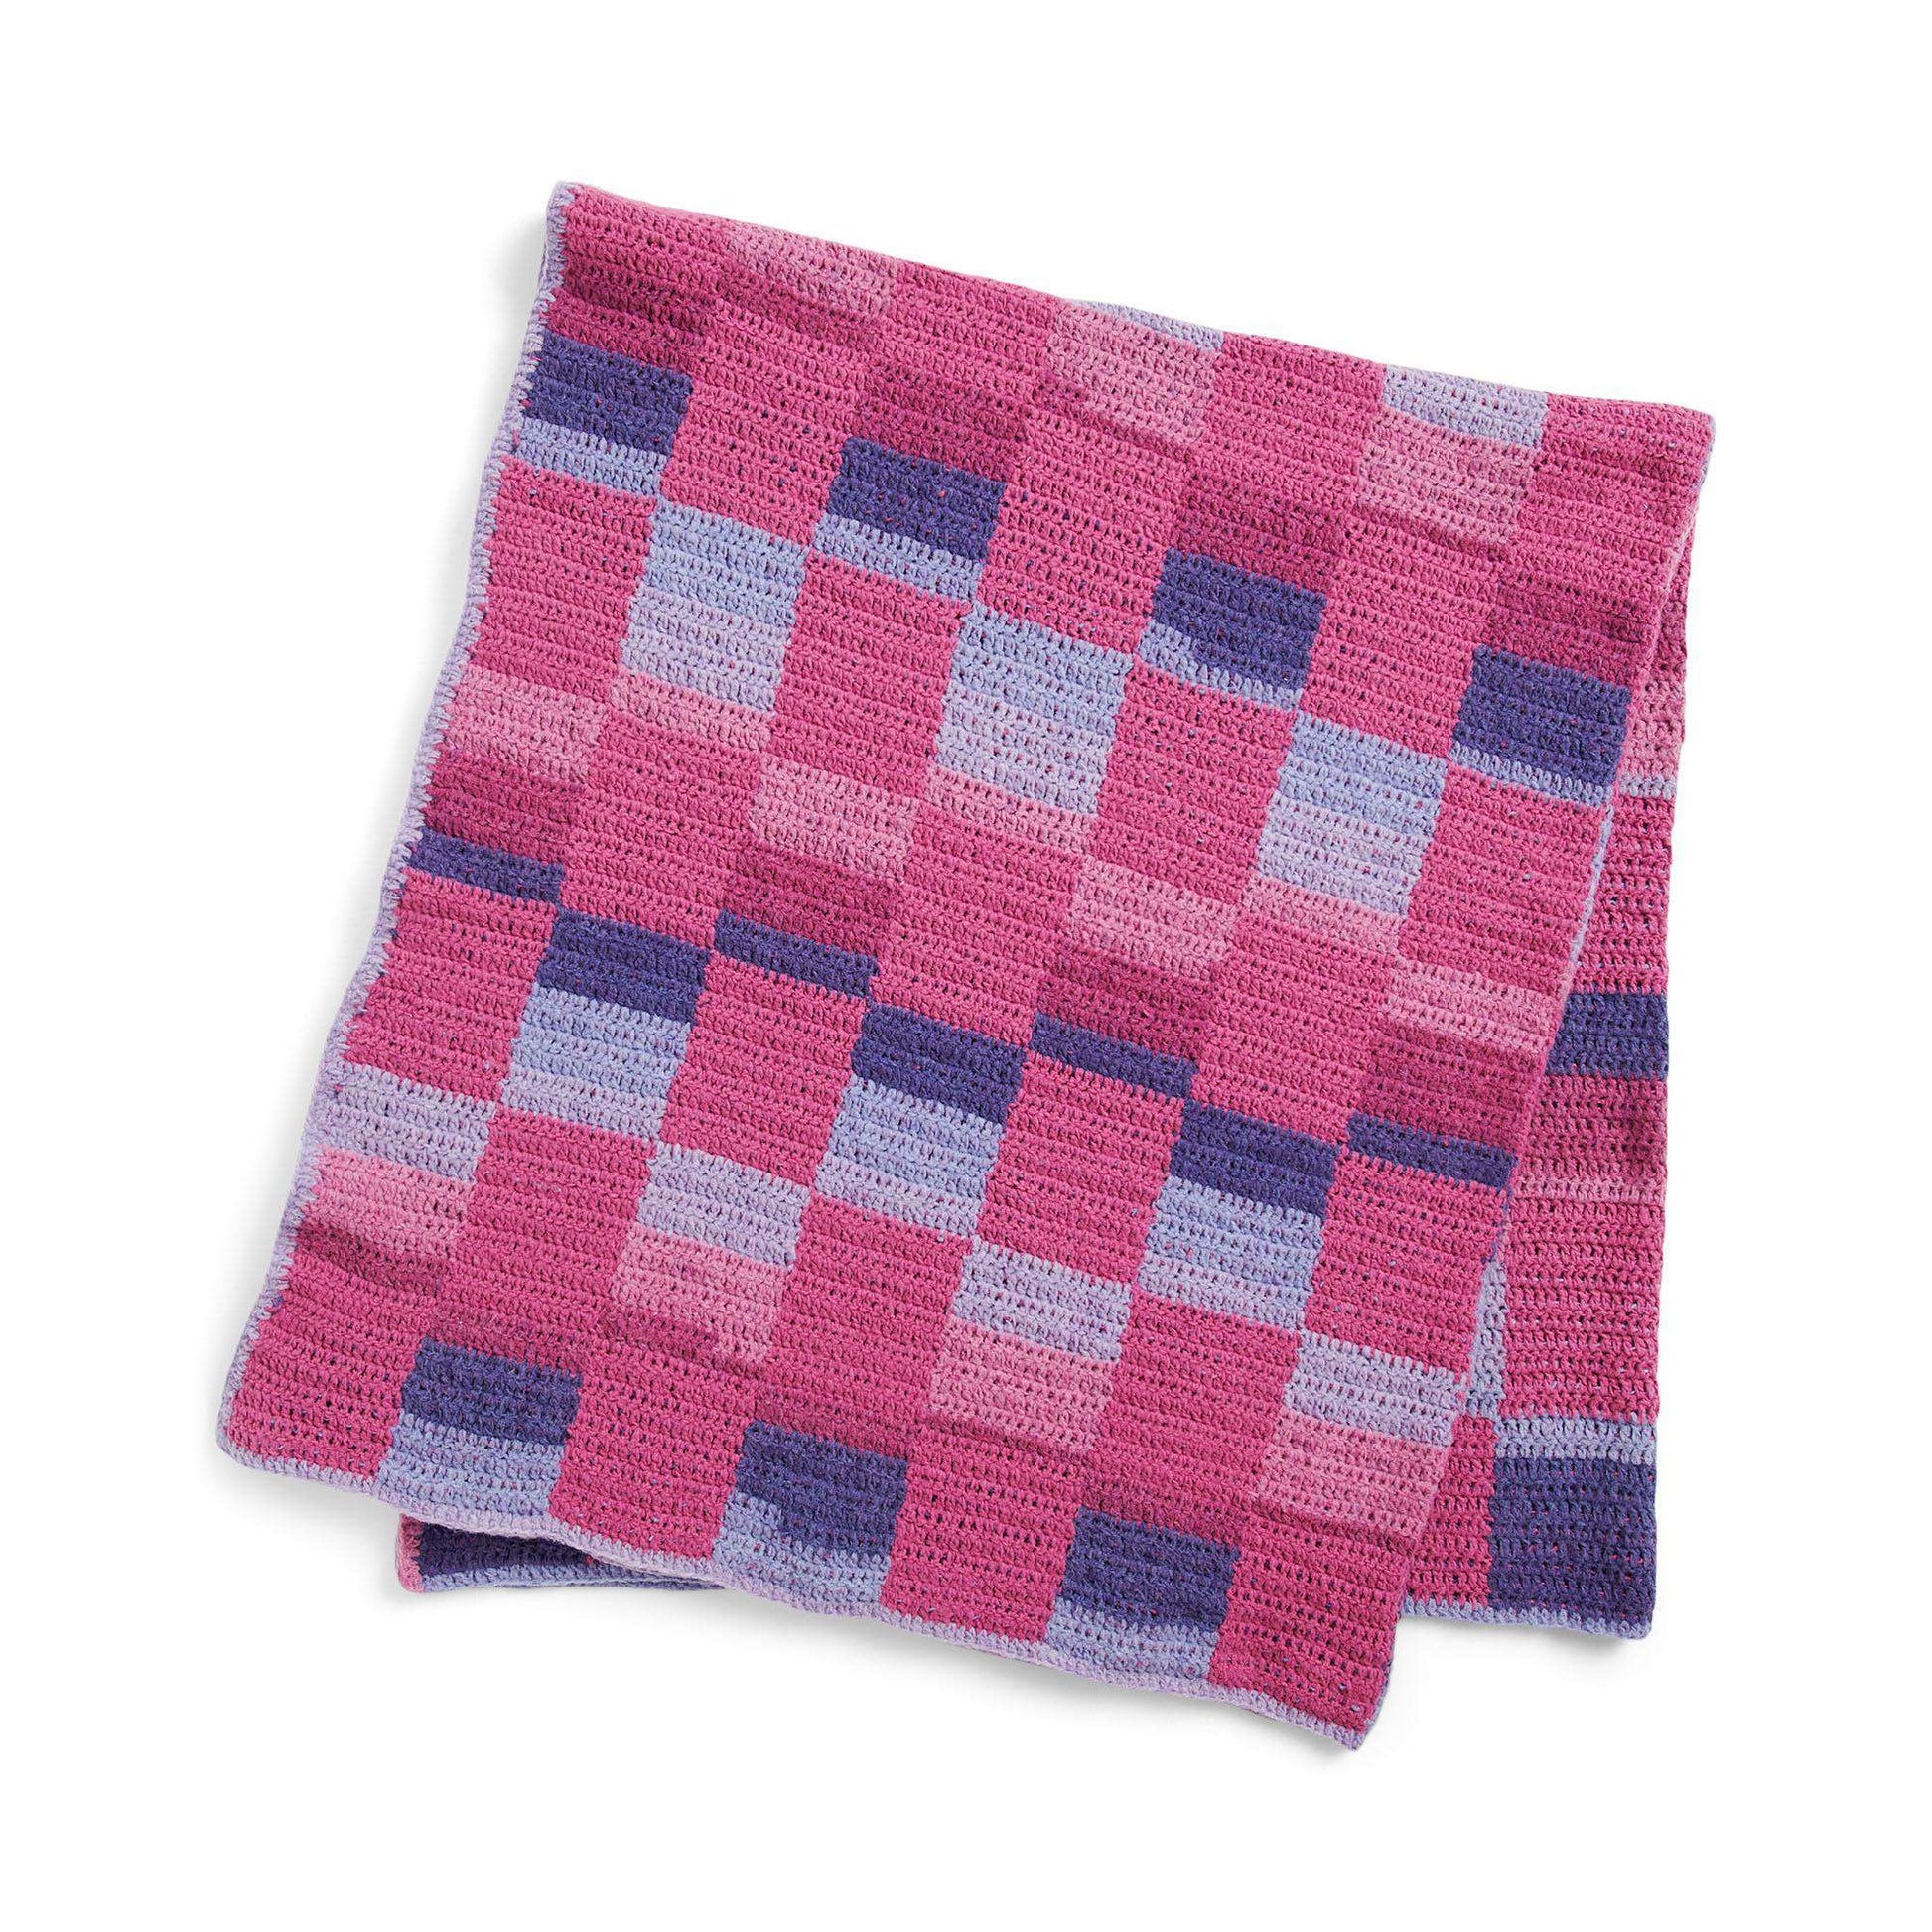 Caron Checks Out Crochet Blanket Pattern